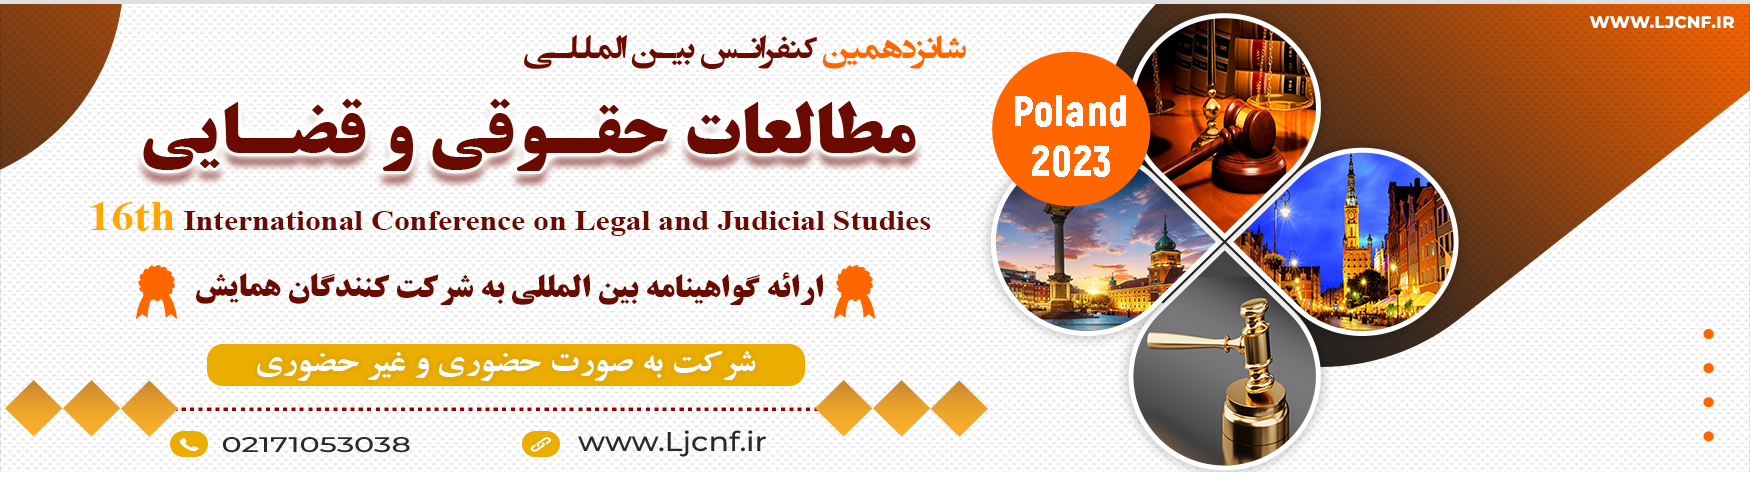 کنفرانس بین المللی مطالعات حقوقی و قضایی